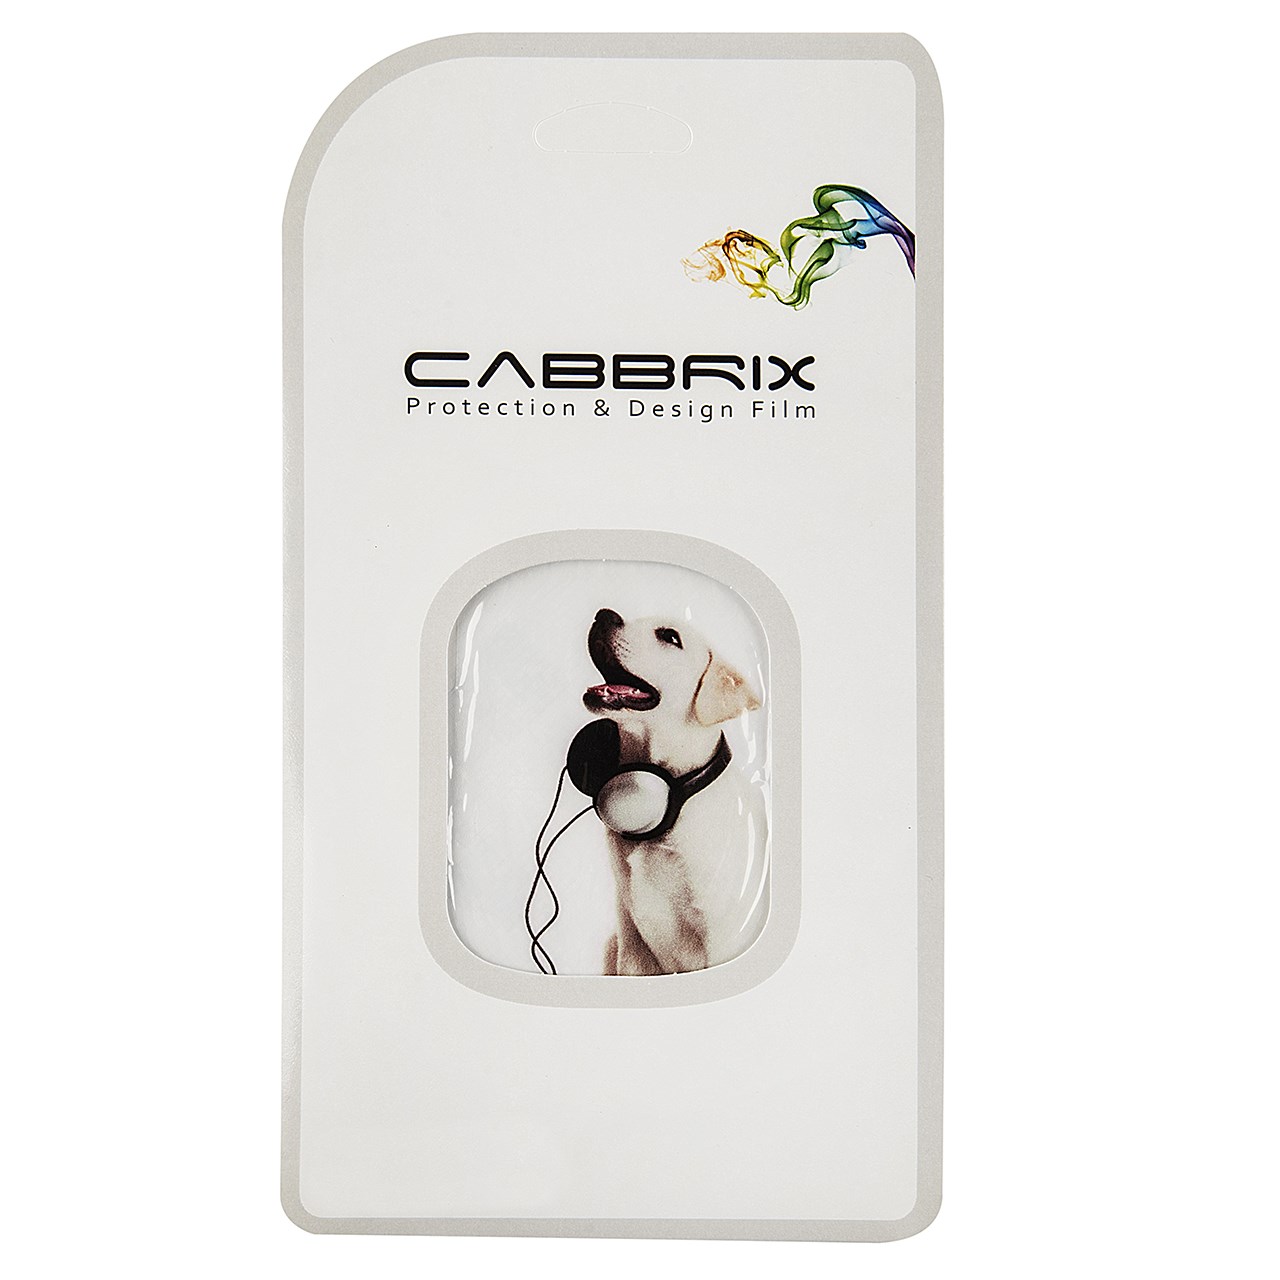 برچسب تزئینی کابریکس مدل HS143803 مناسب برای گوشی موبایل آیفون 6/6s